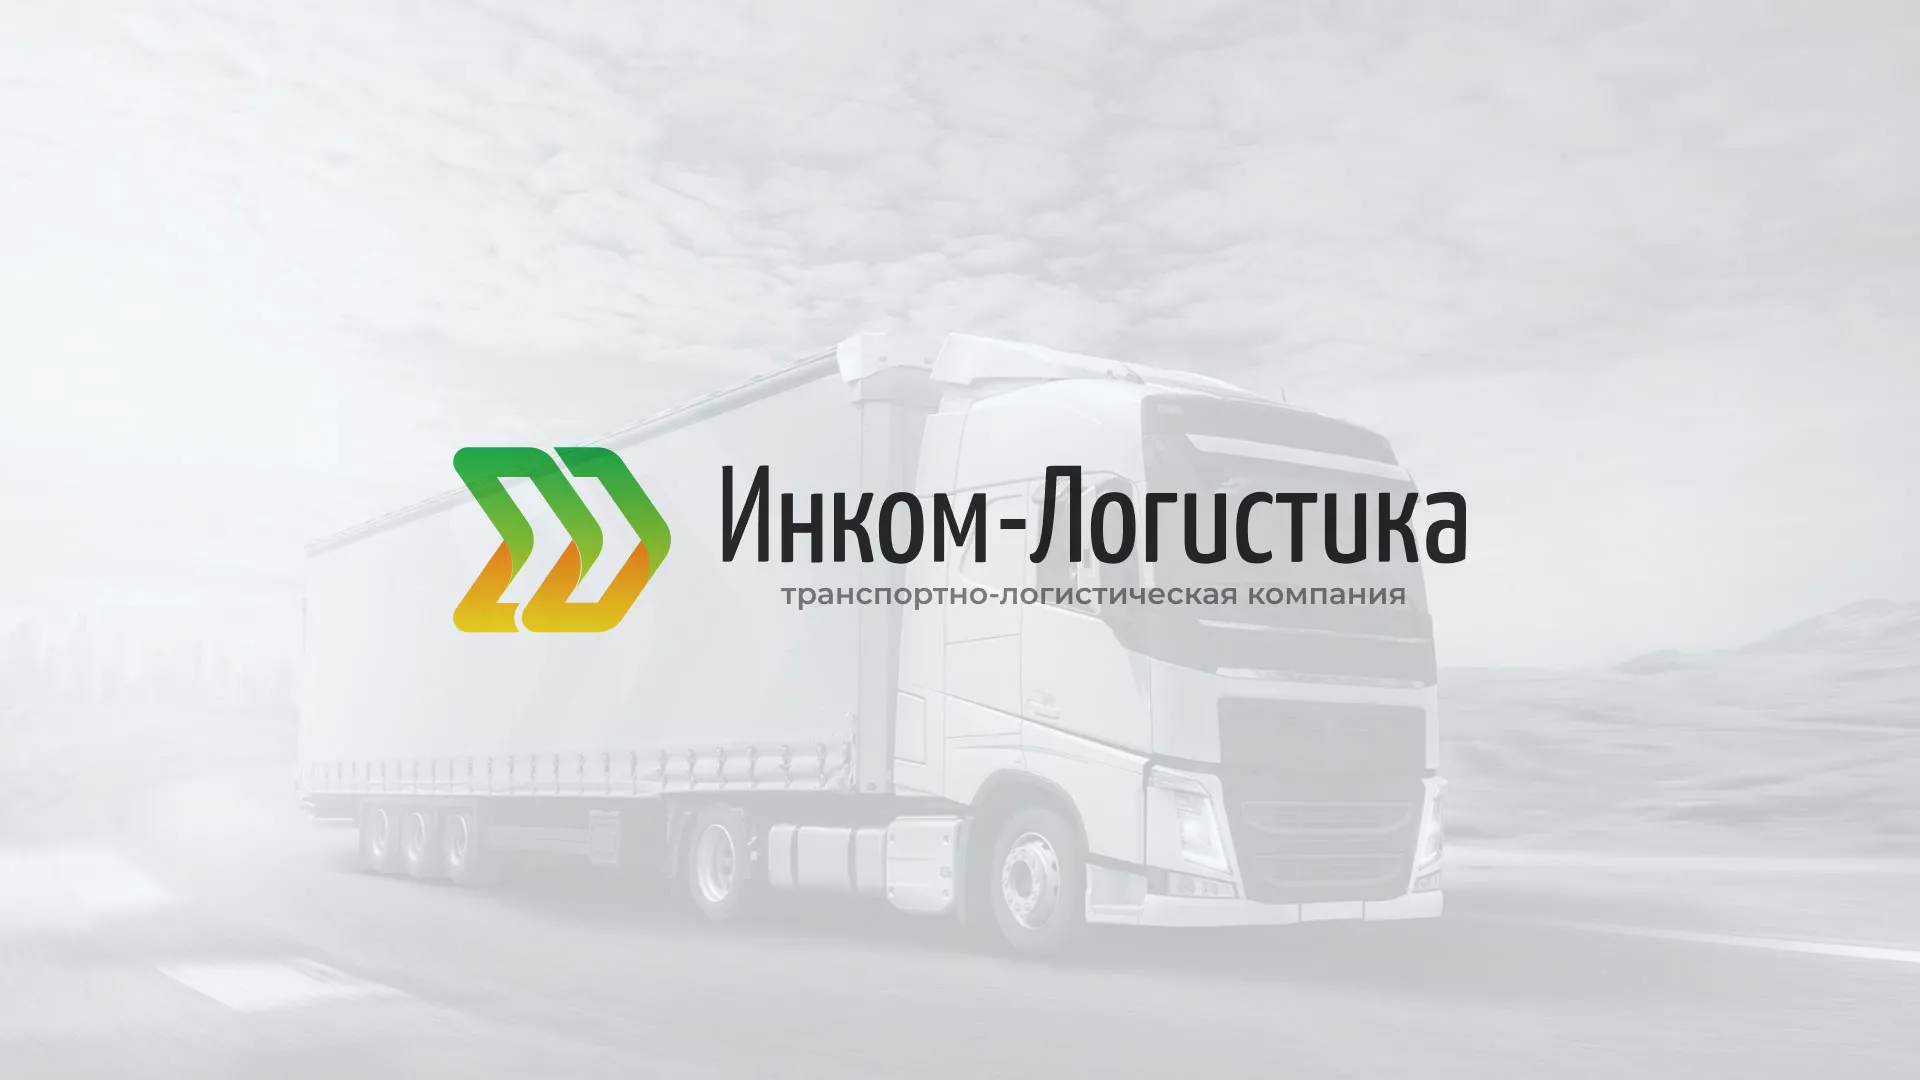 Разработка логотипа и сайта компании «Инком-Логистика» в Кашине